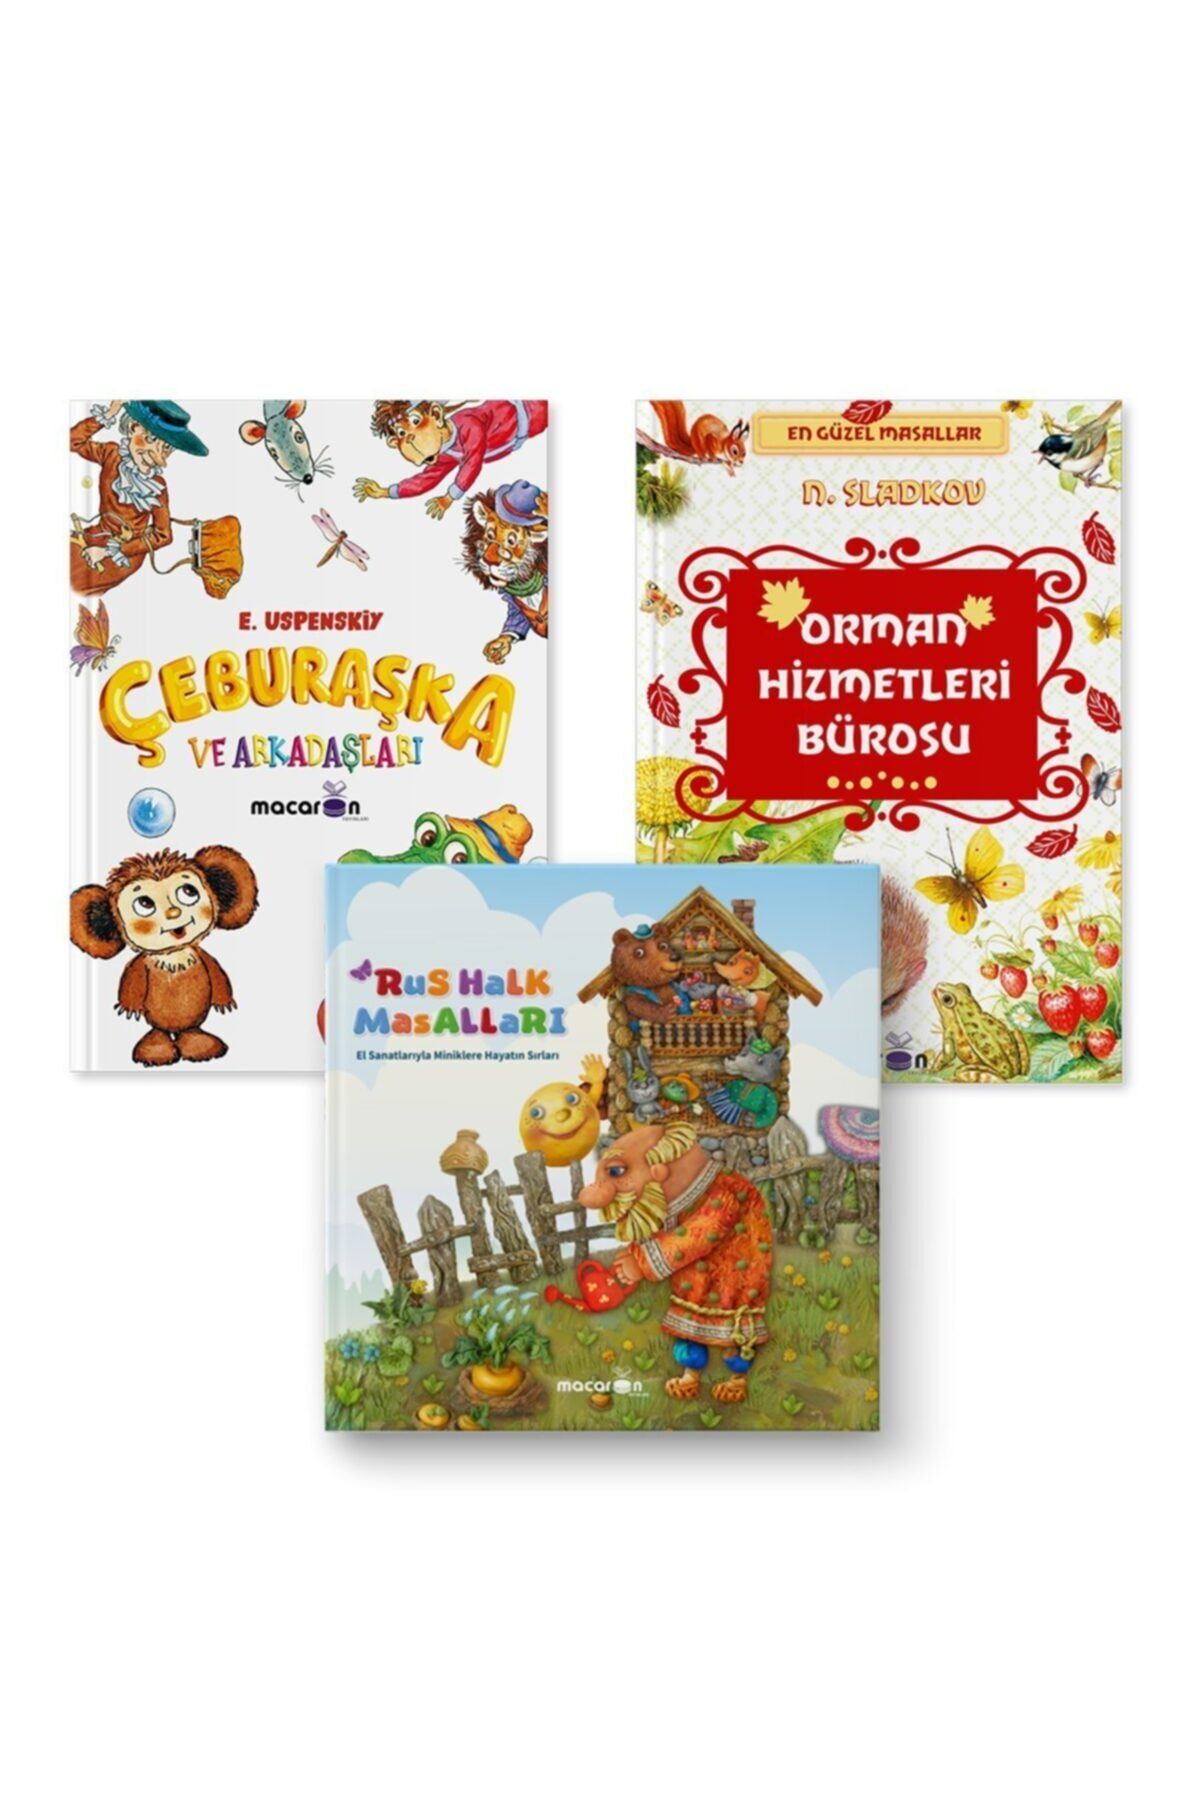 Macaron Yayınları Zen Çocuk Kitapları Seti (orman Hizmetleri Bürosu-çeburaşka Ve Arkadaşları-rus Halk Masalları)